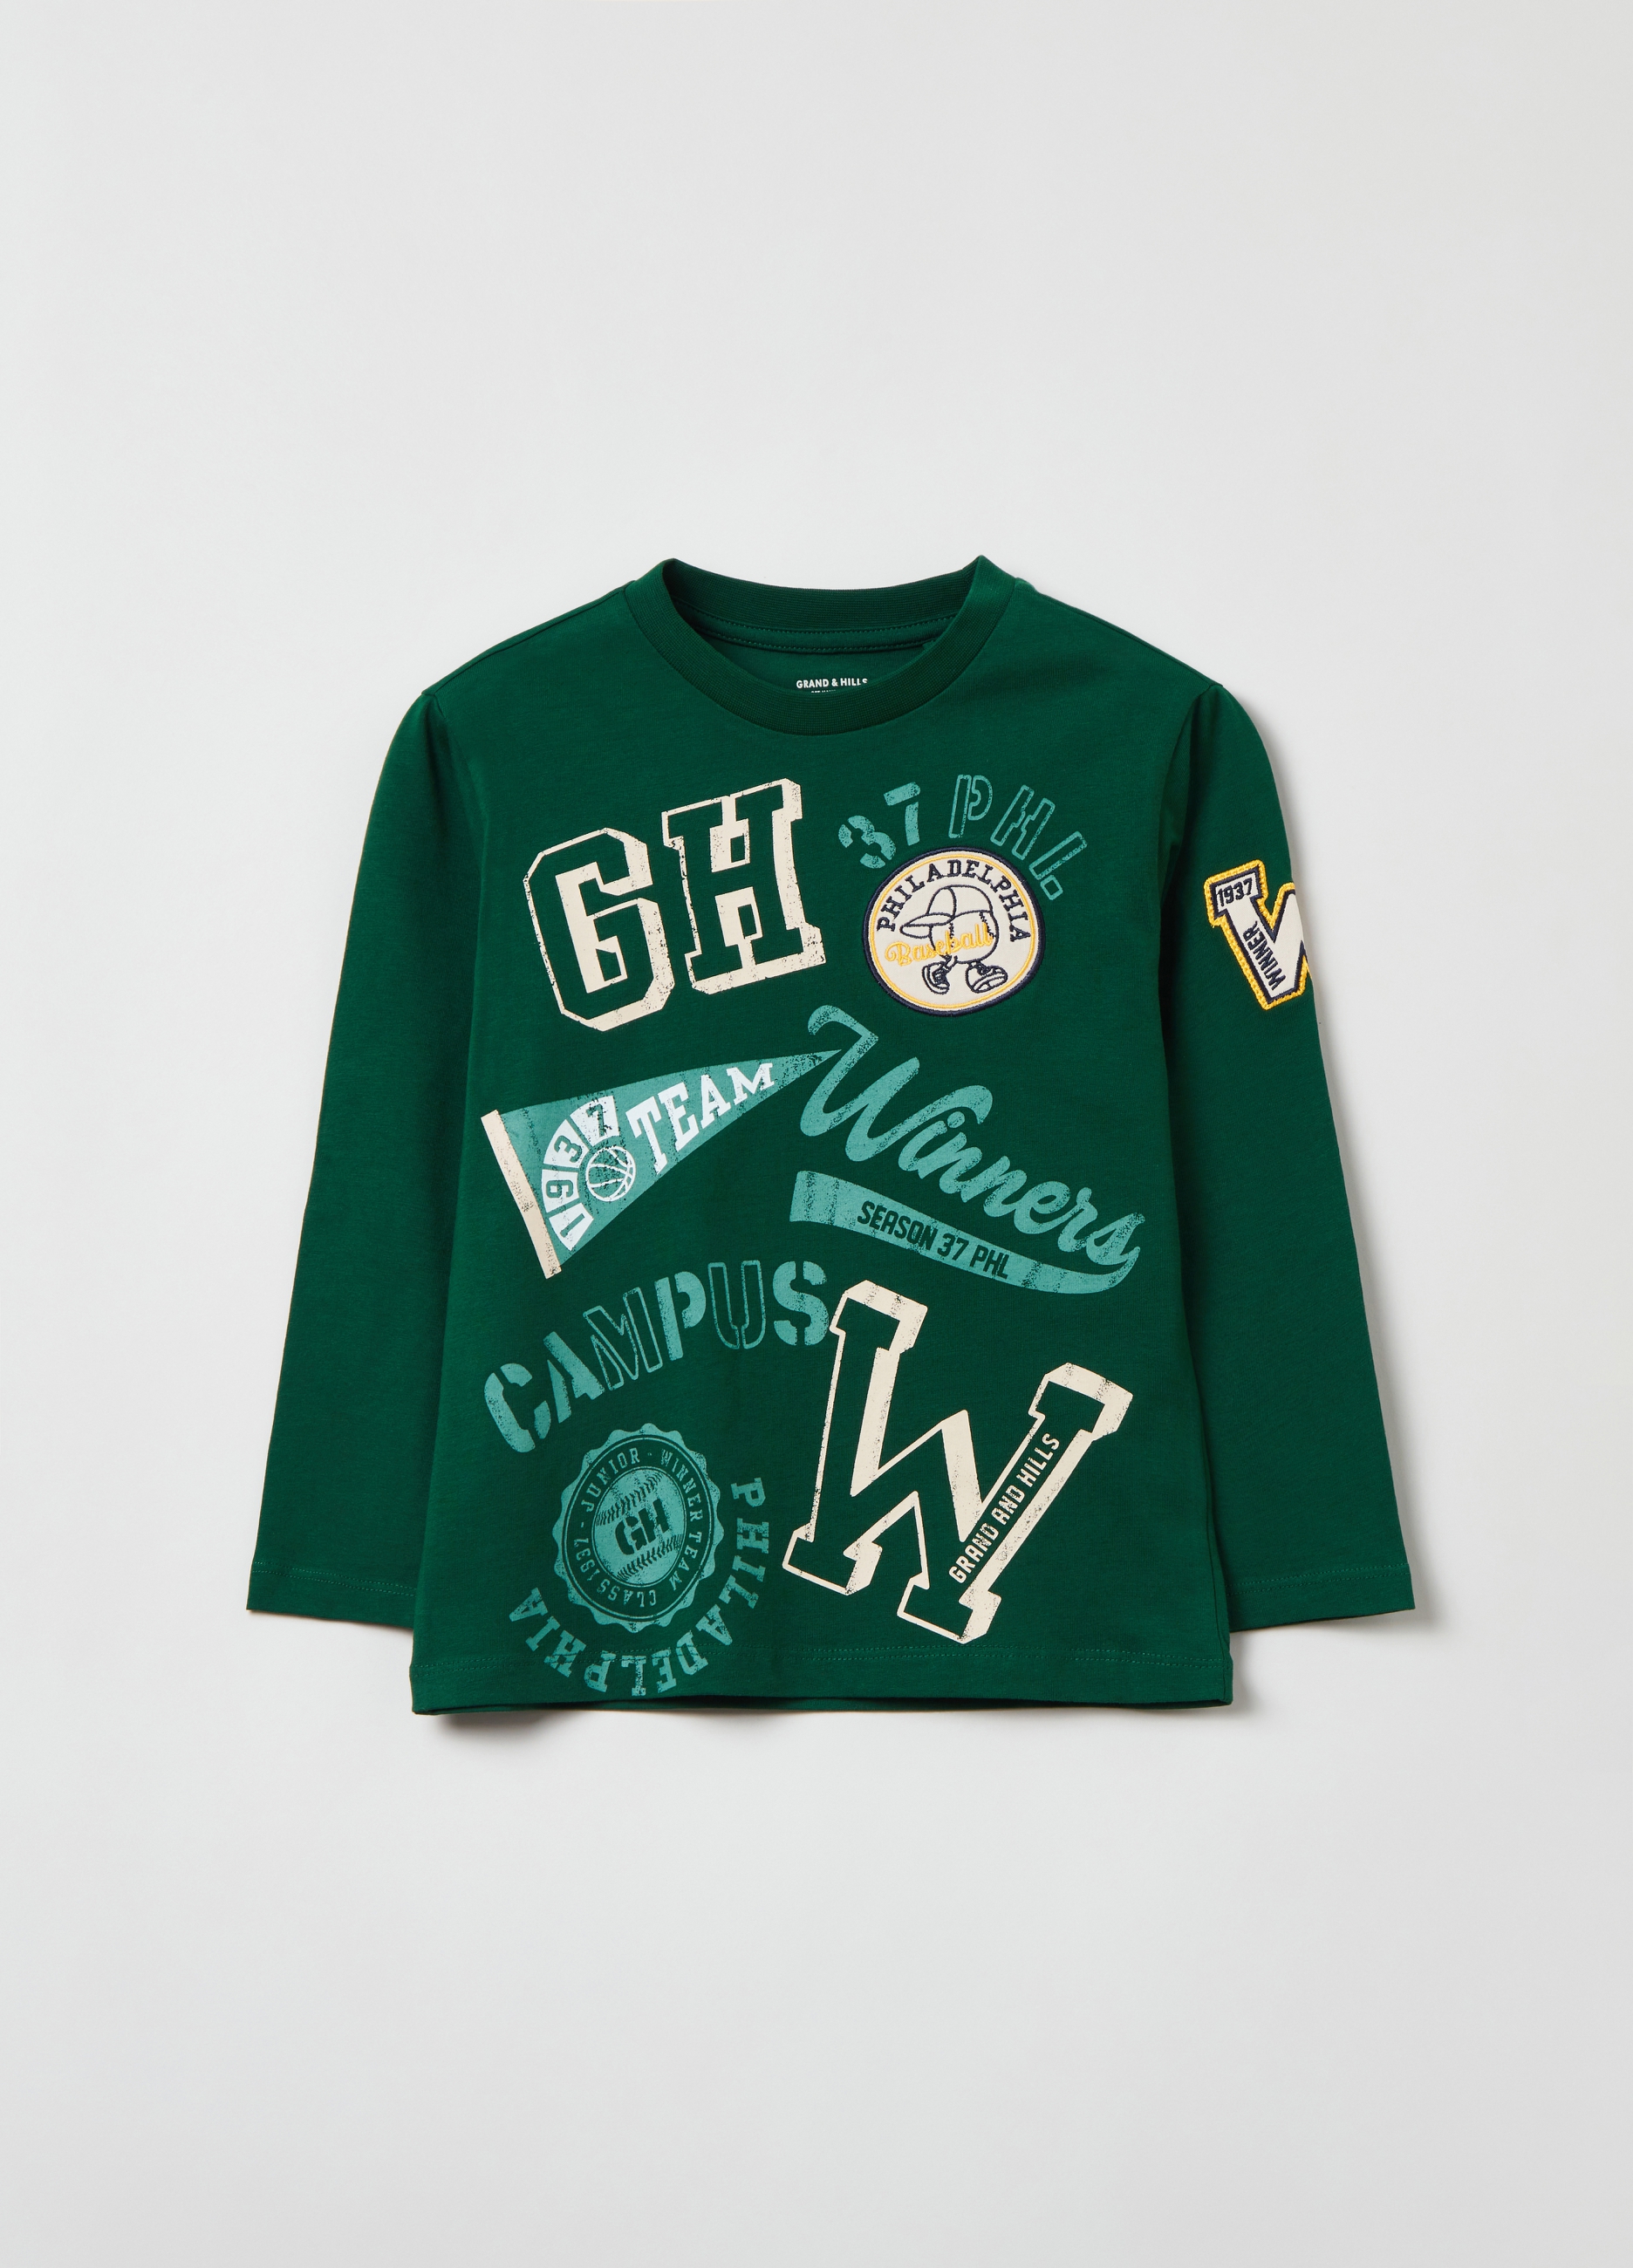 Футболка OVS для мальчиков, зеленая, 6-7 лет, 1834270 футболка для мальчиков зеленая с текстом принтом